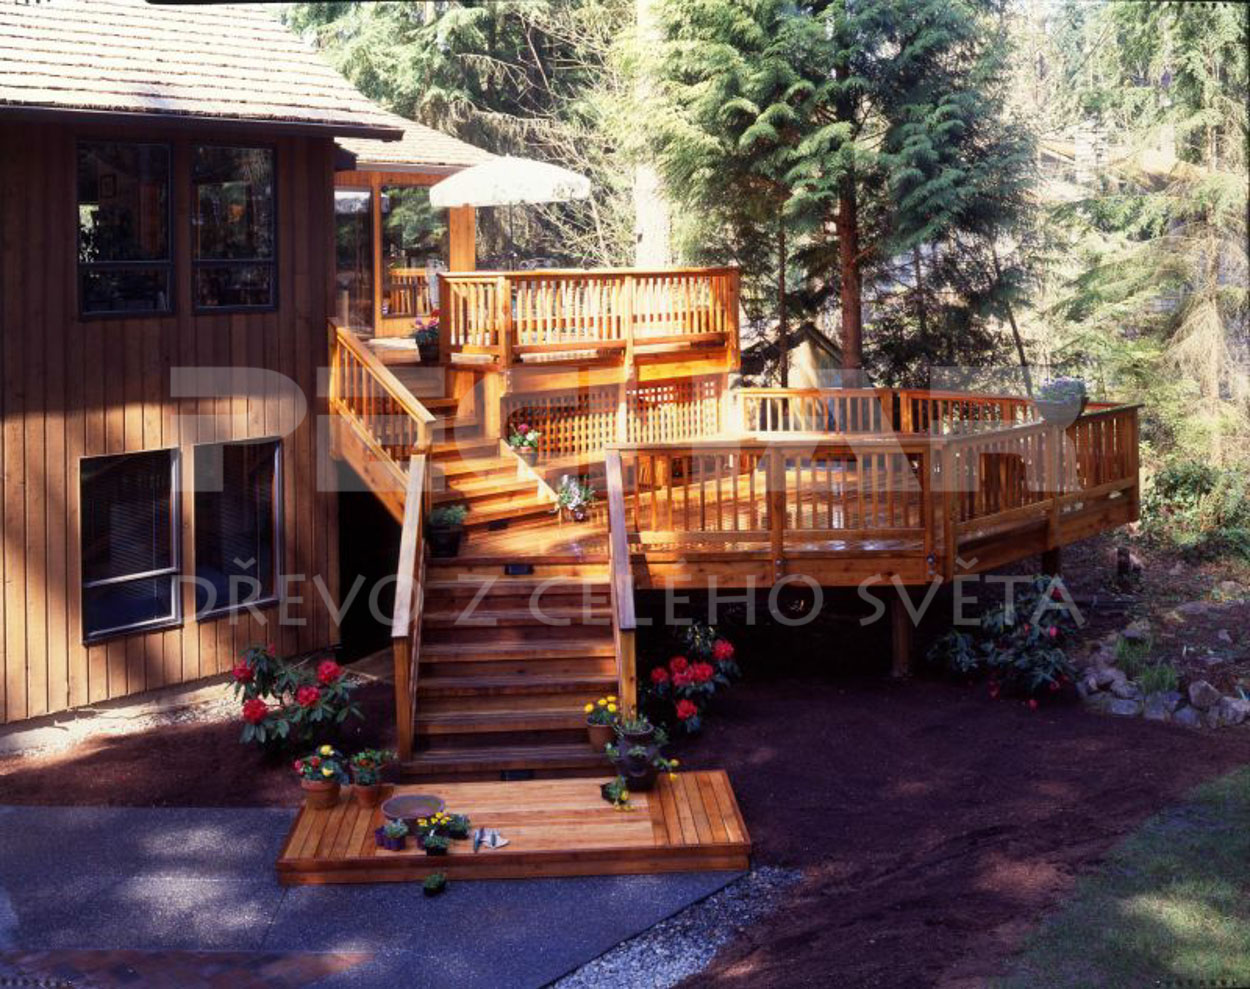 Western Red Cedar wooden decking